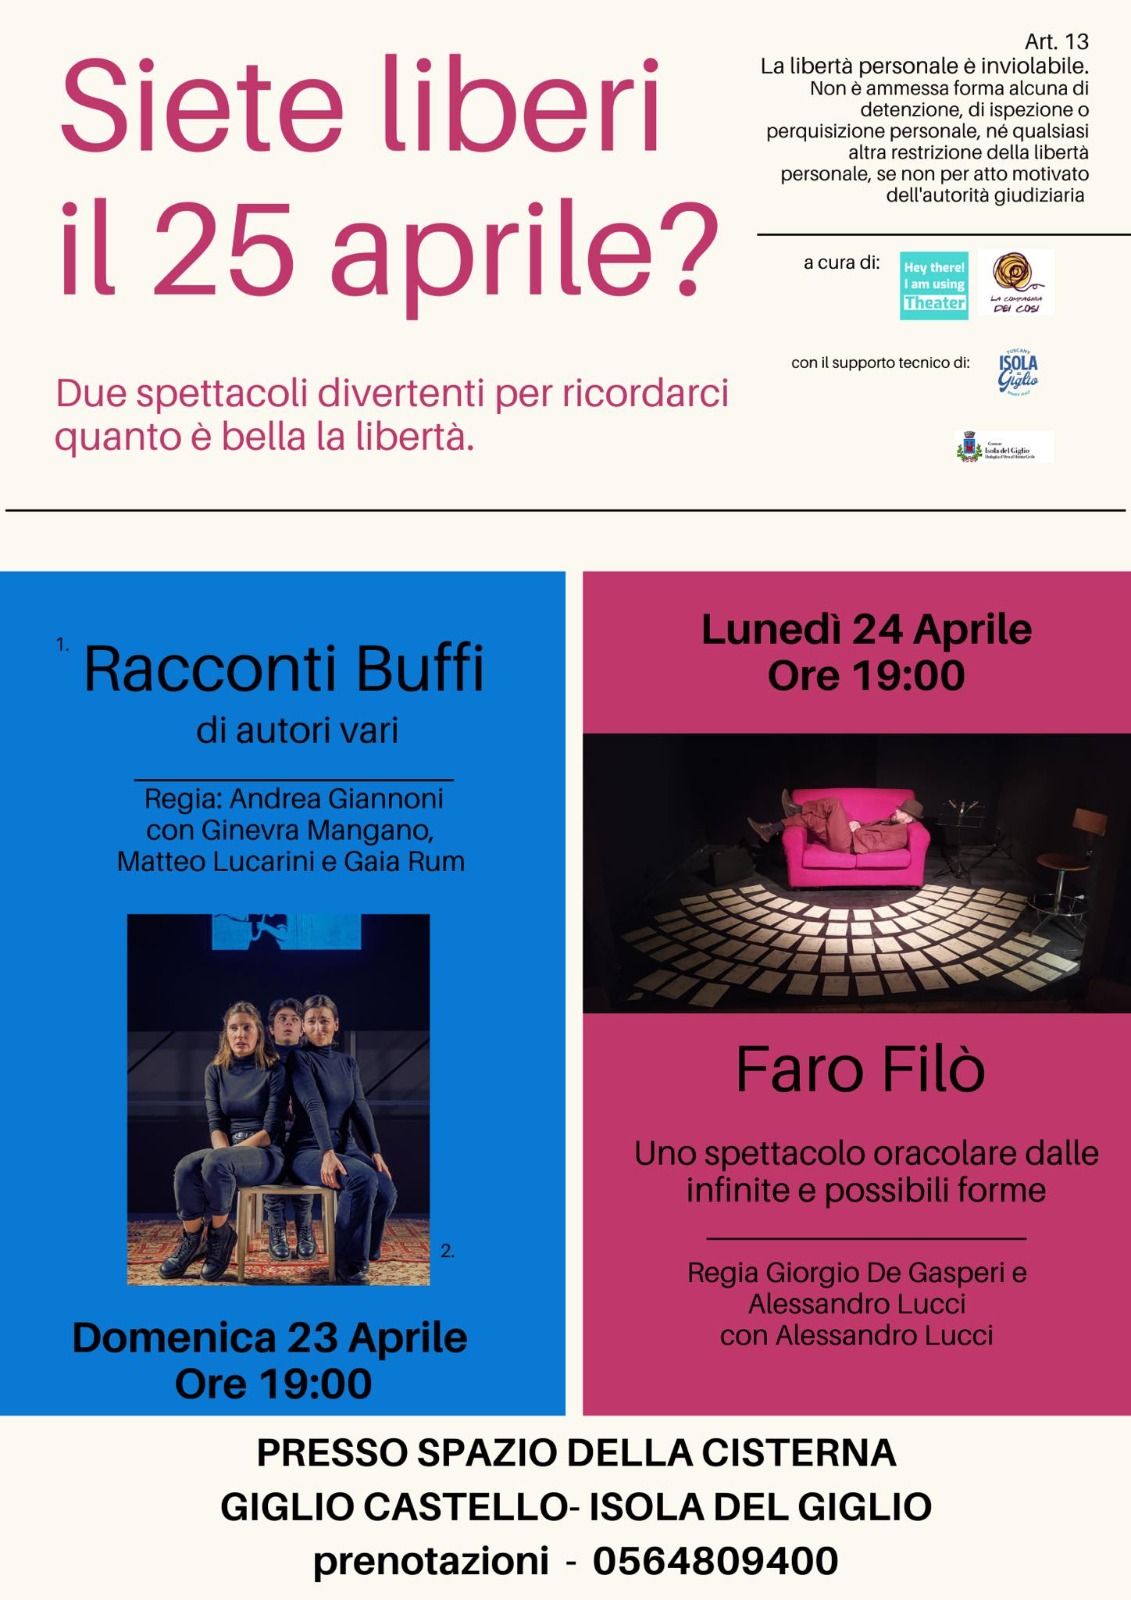 Seite liberi il 25 aprile - Locandina spettacoli teatrali al Giglio Castello